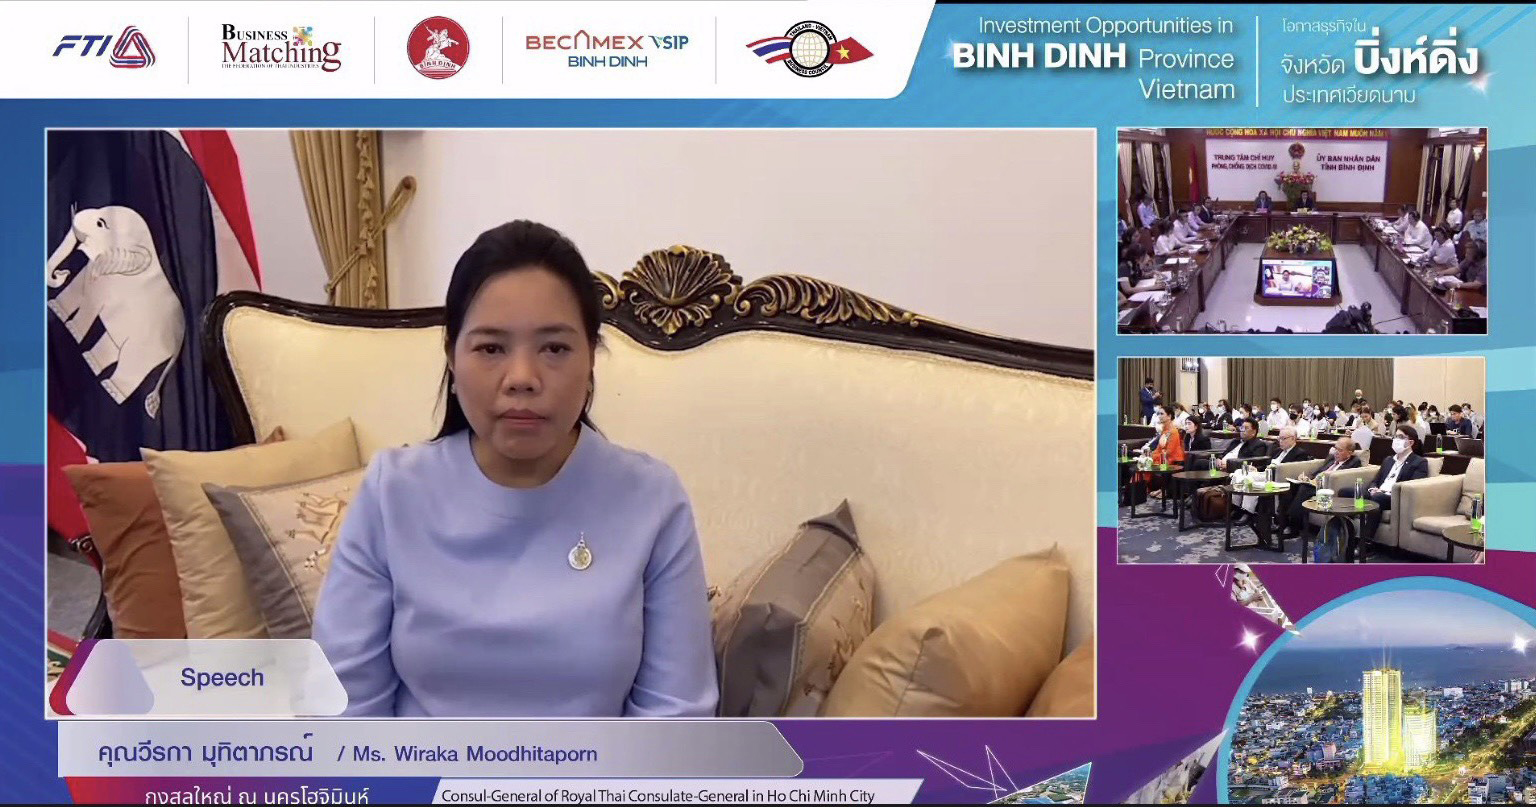 Tổng Công ty Becamex IDC phối hợp với UBND tỉnh Bình Định tổ chức Hội thảo trực tuyến Xúc tiến đầu tư Thái Lan